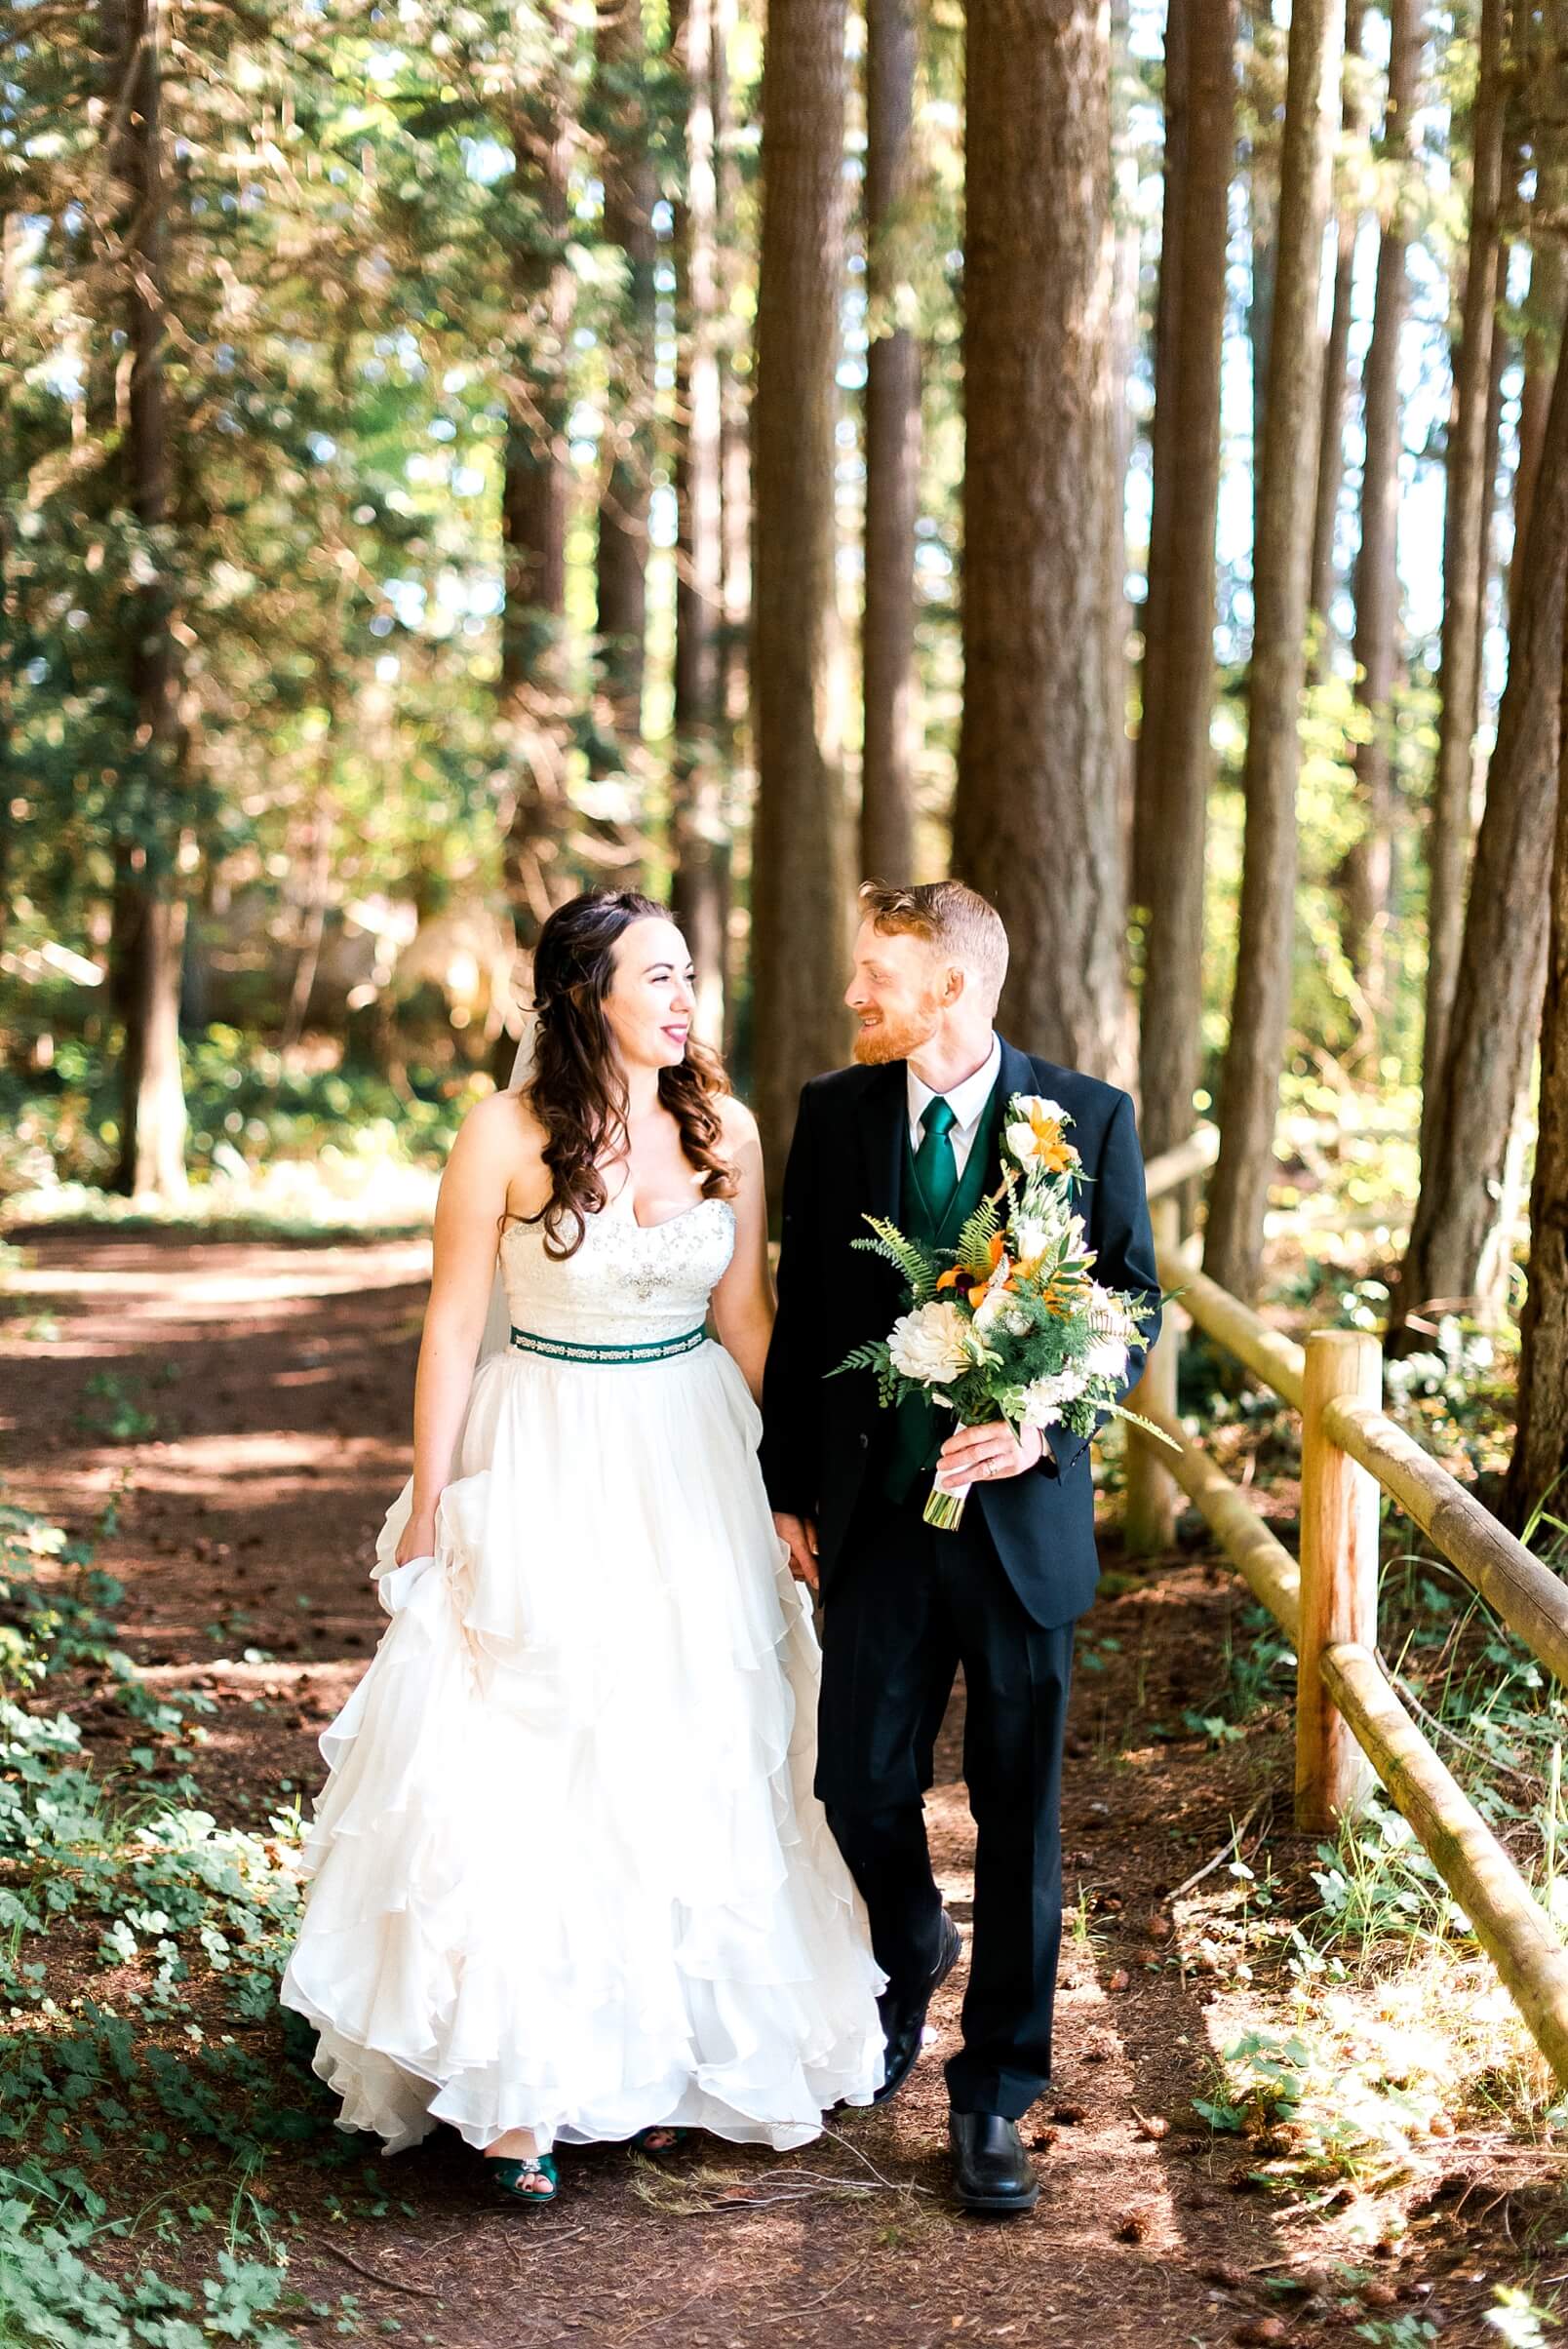 Wedding at Kitsap Memorial State Park